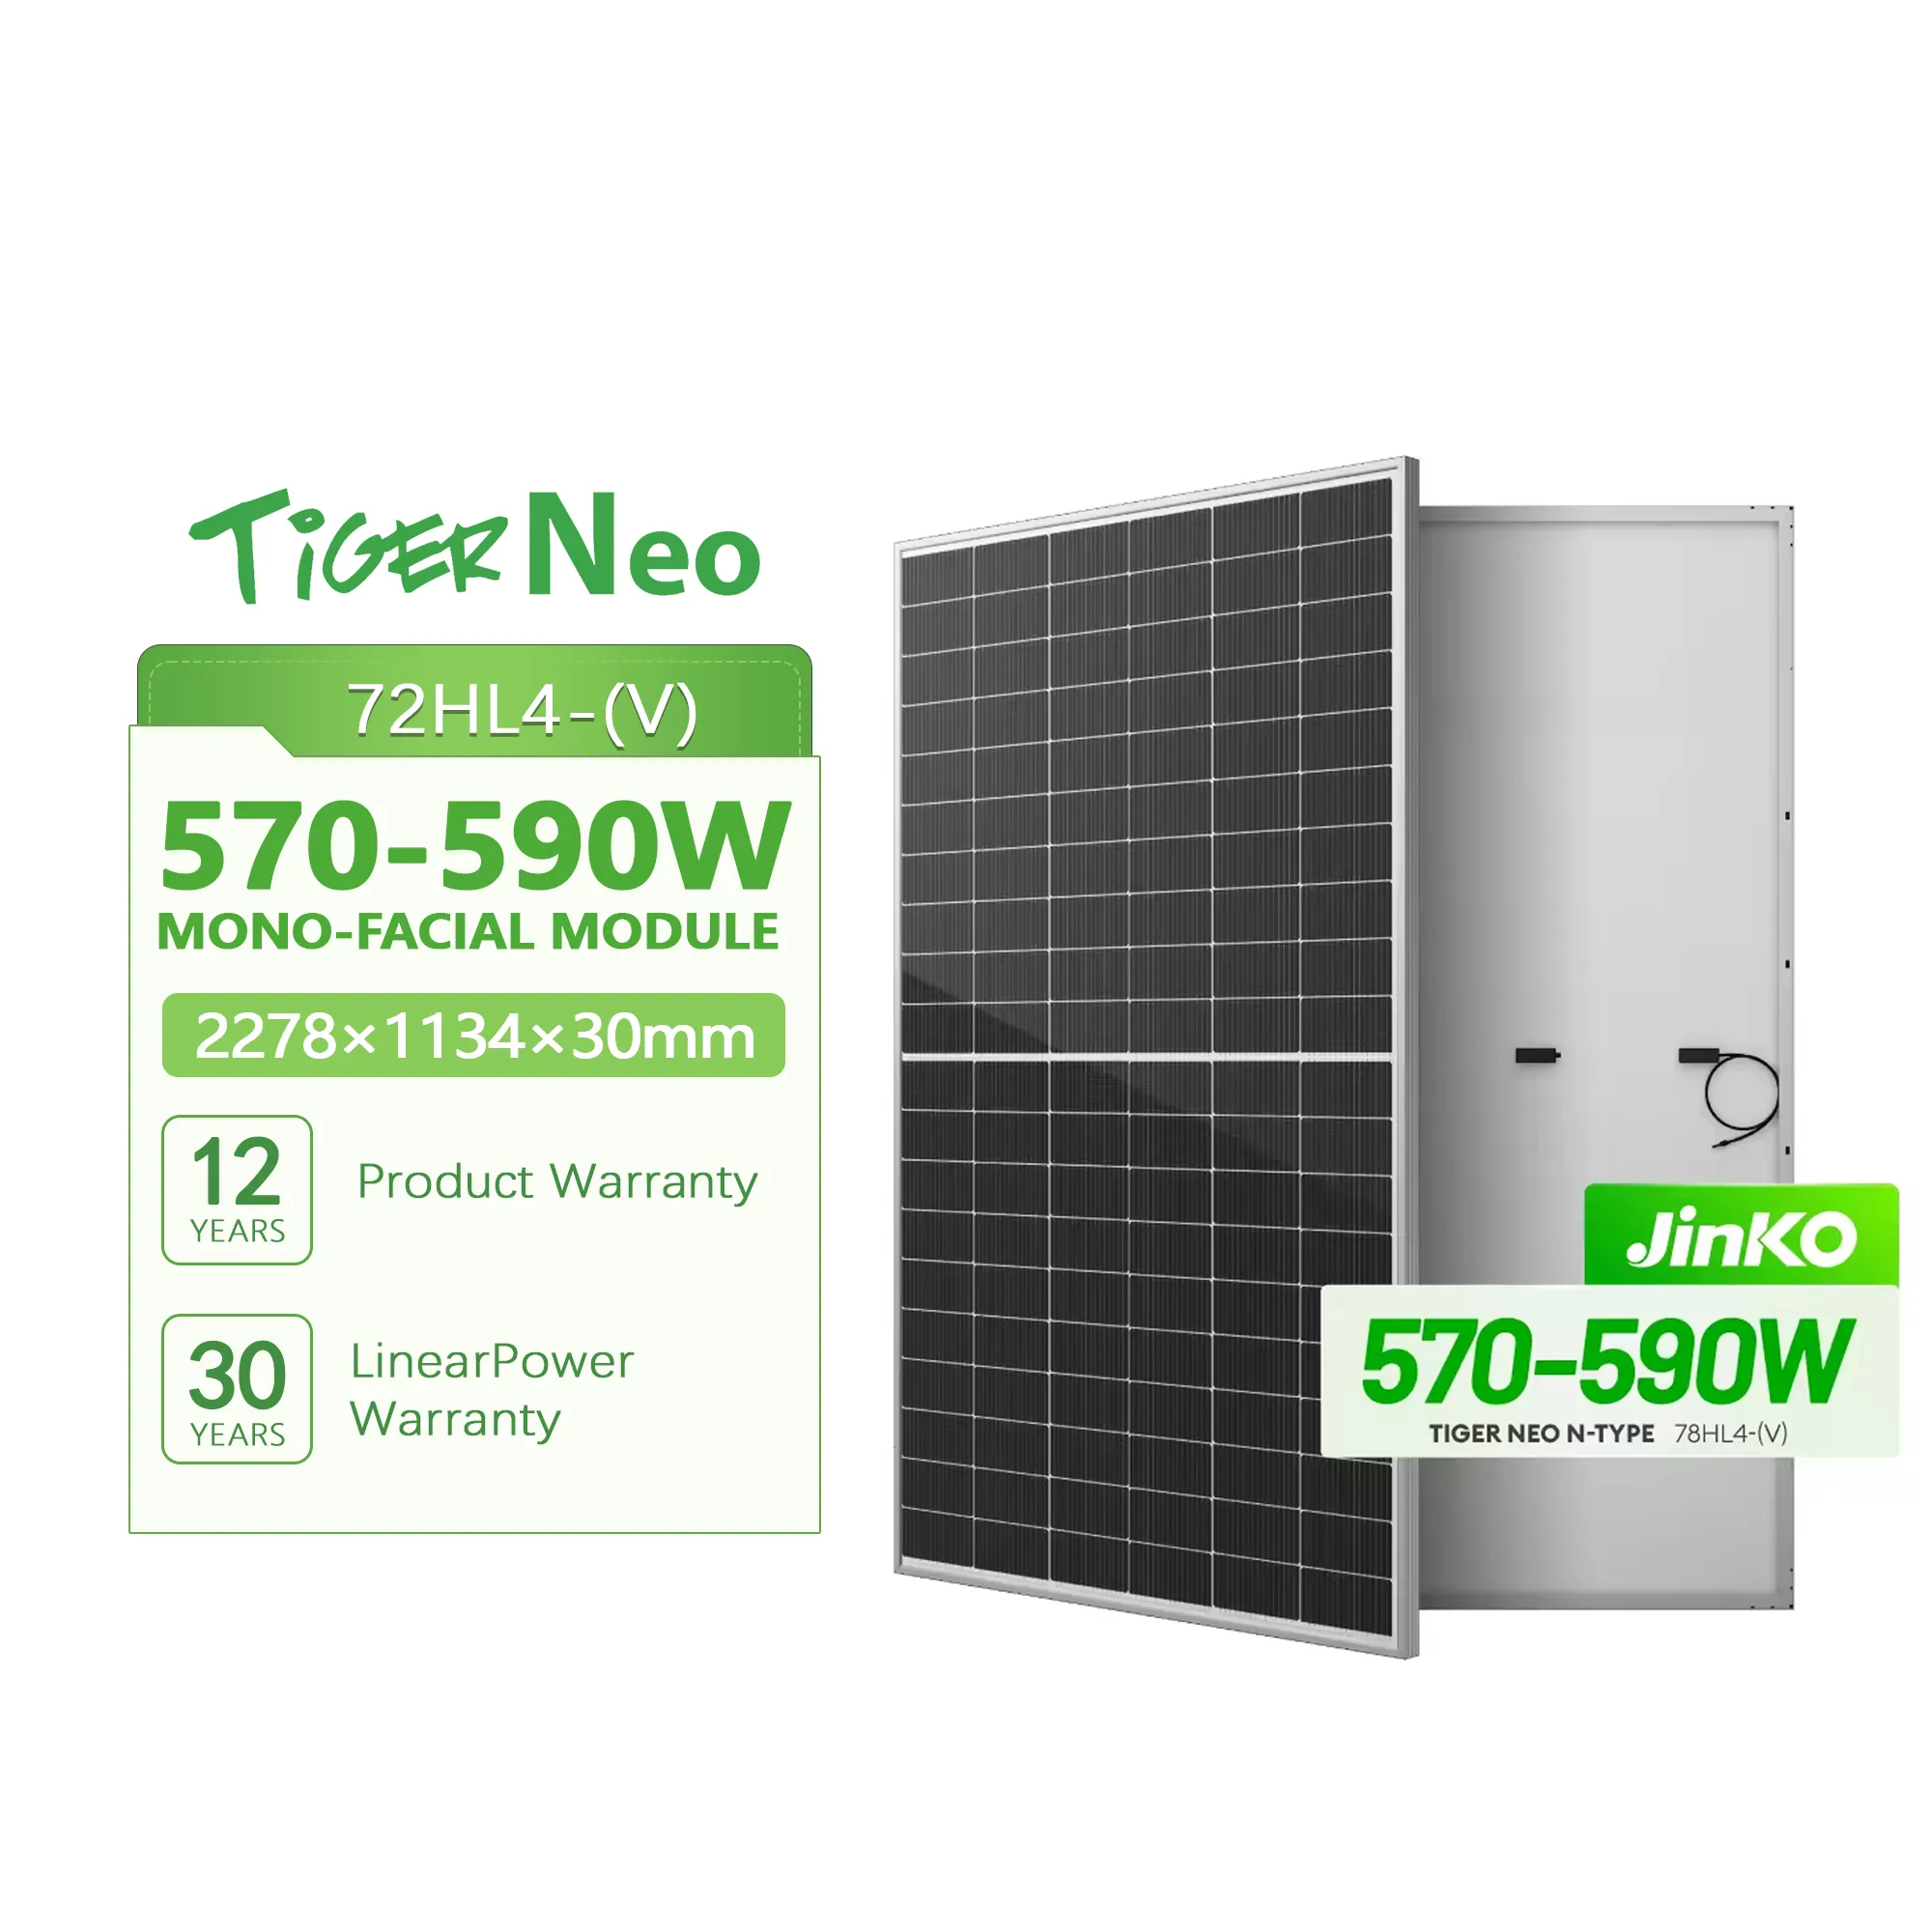 JINKO Tiger Neo 575W 72HL4-(V) монолицевая солнечная панель с возможностью упаковки и проверки на заводе pv-модуль